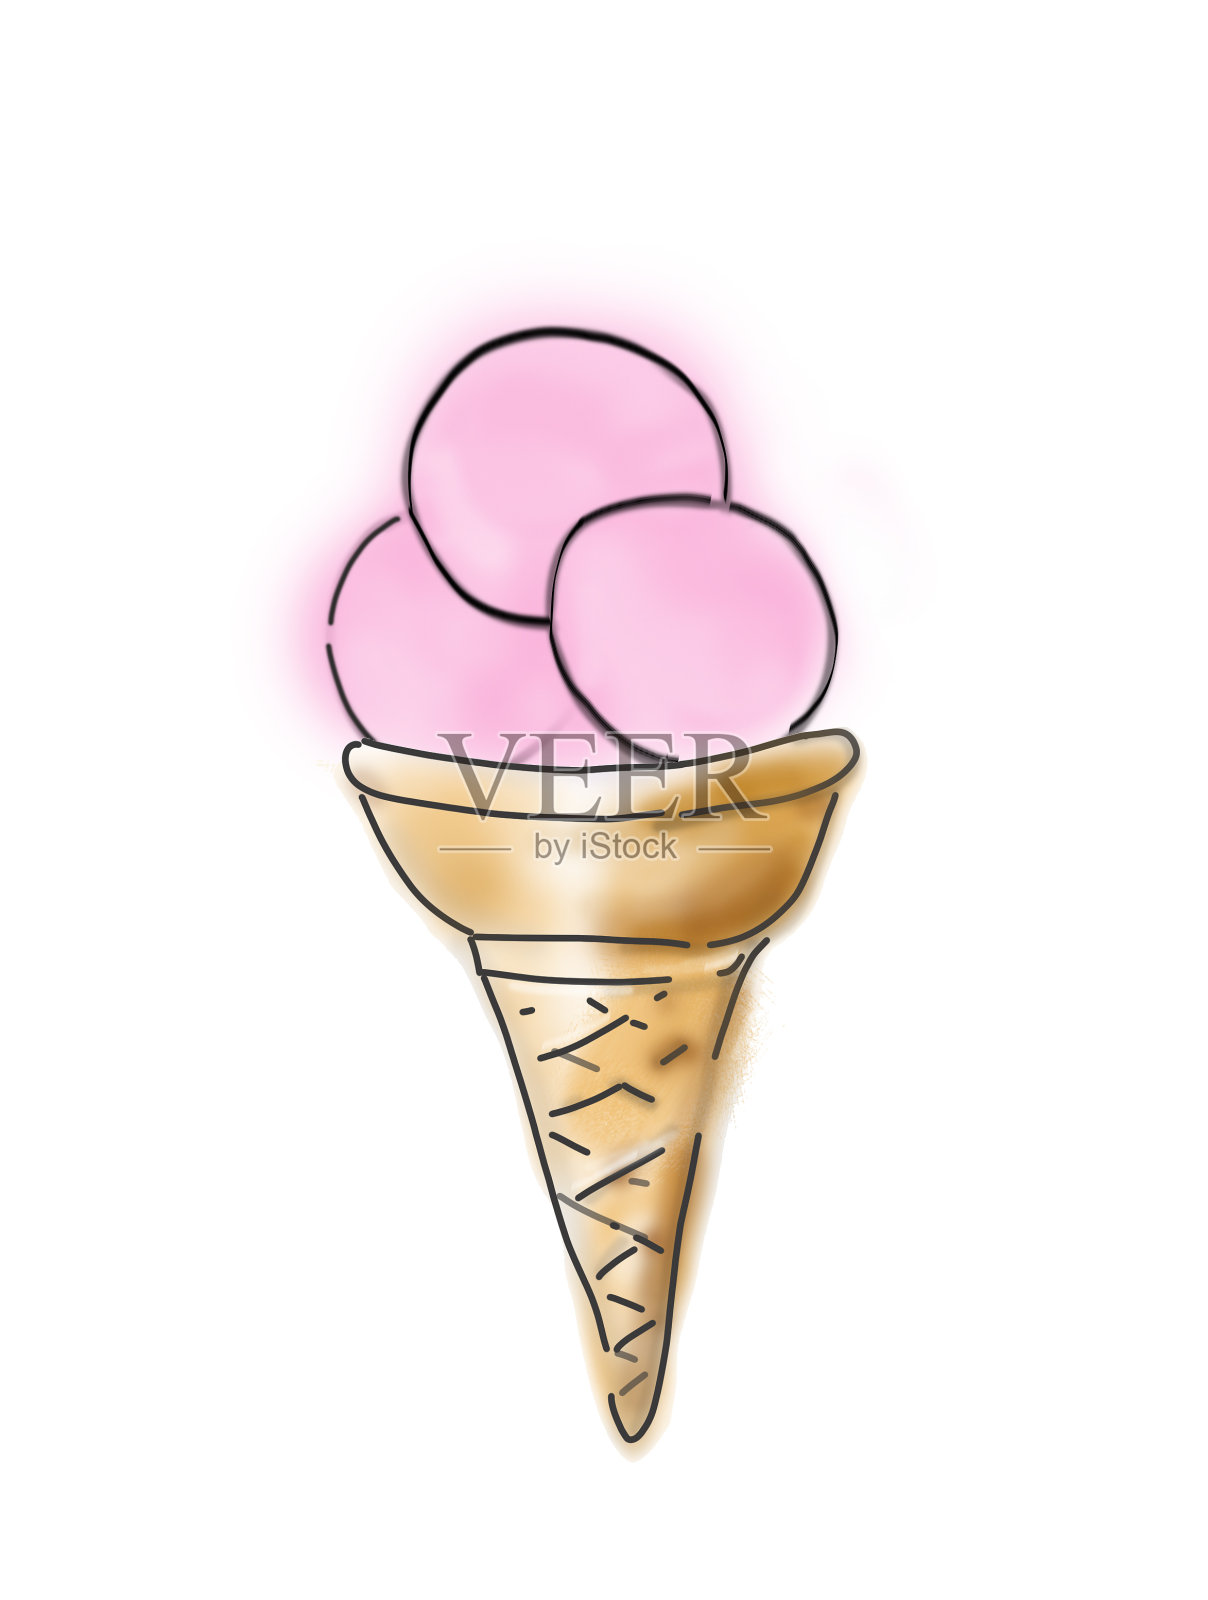 华夫蛋筒配粉色草莓或覆盆子冰淇淋。素描风格的插图。设计元素图片